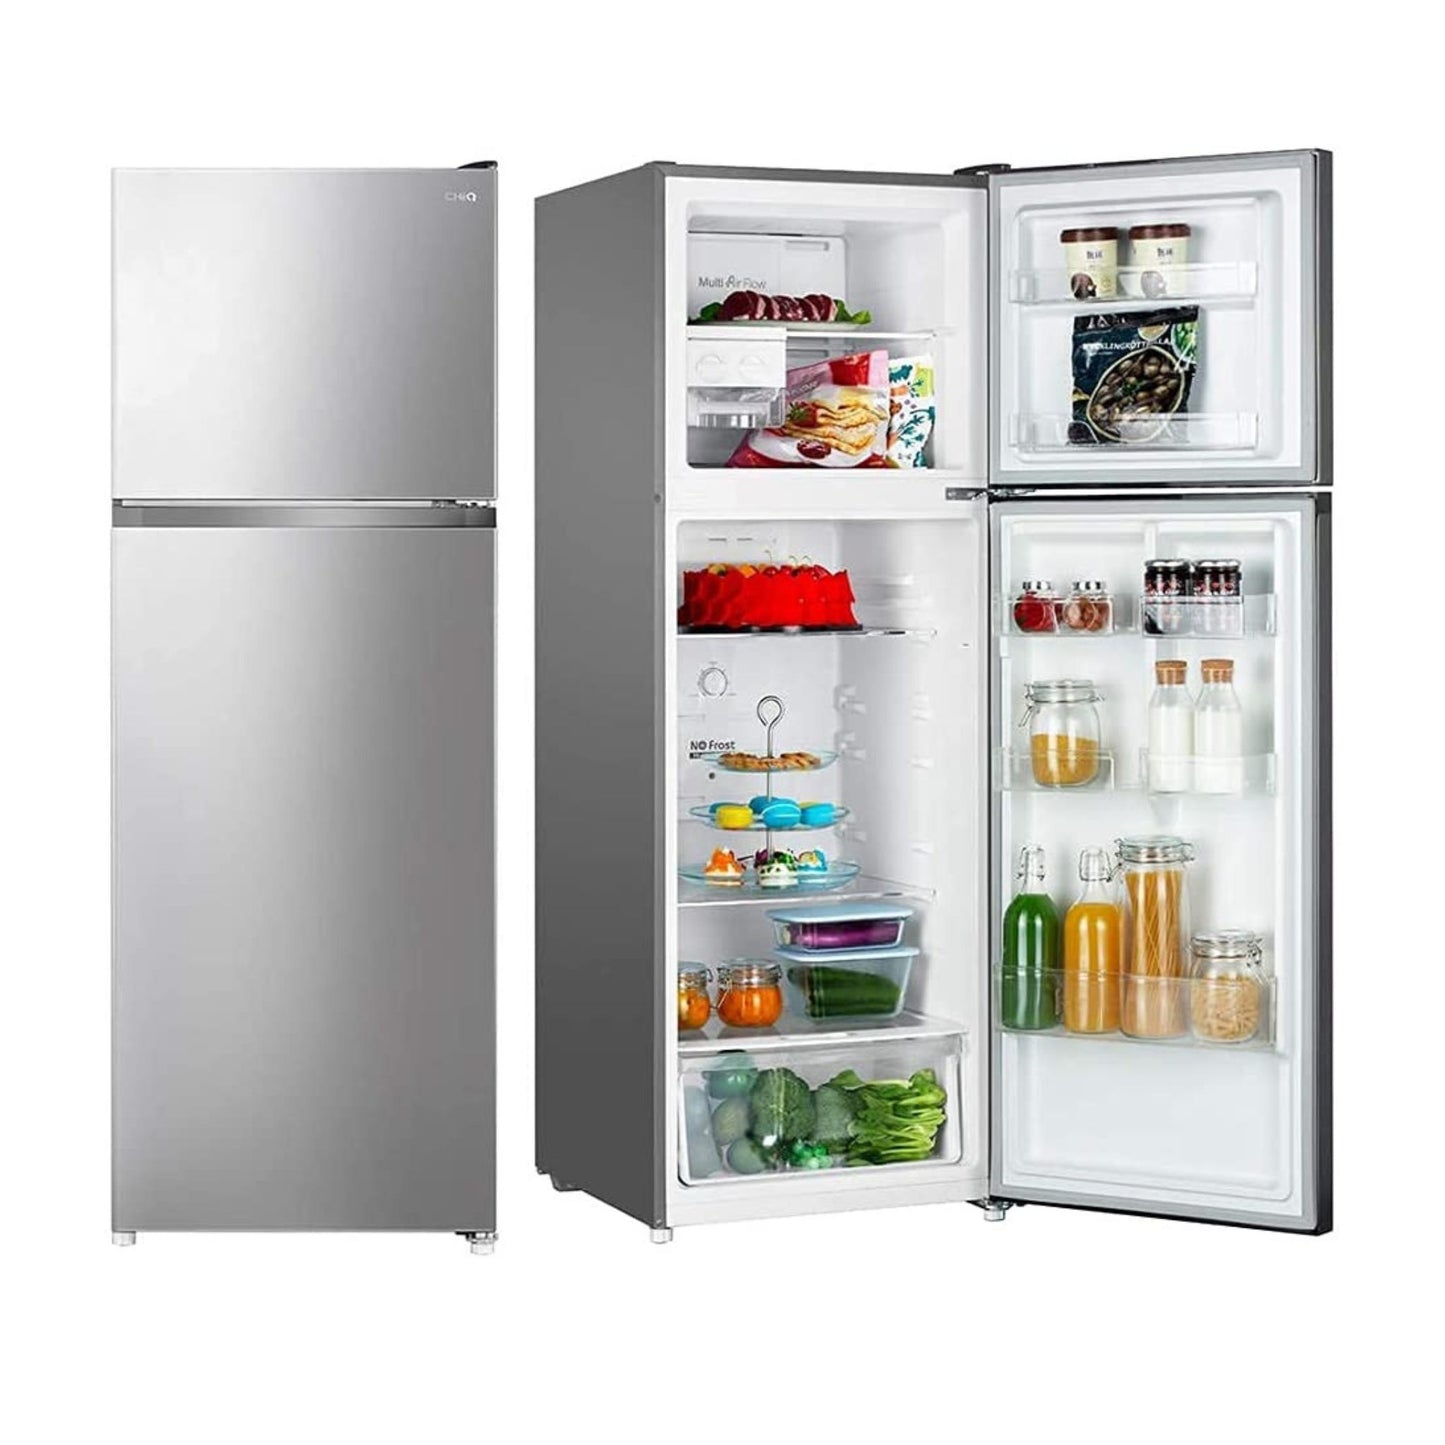 Chiq 450L Refrigerator, CR450S